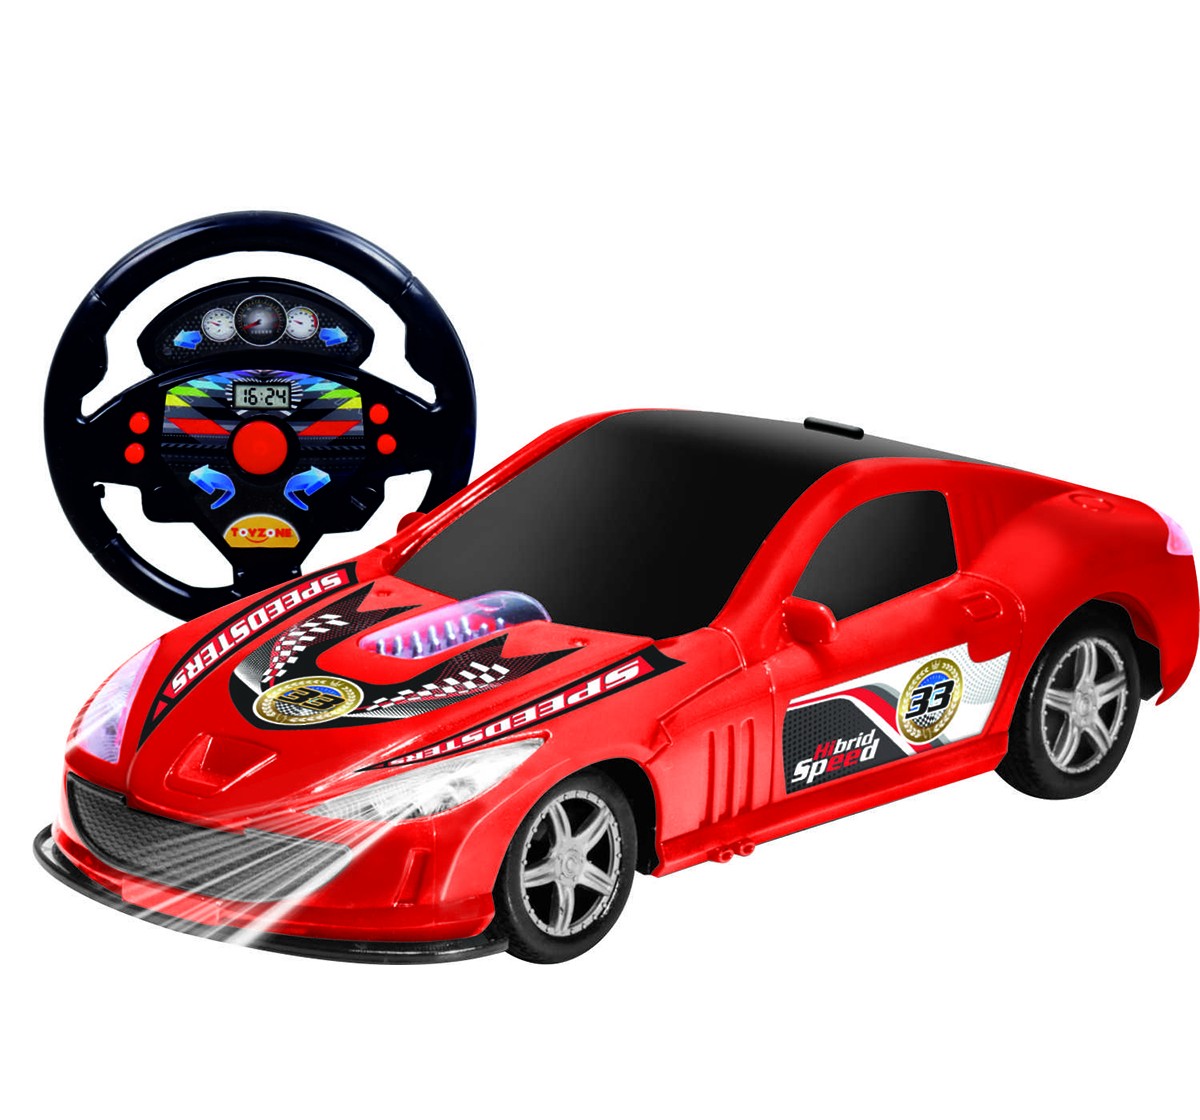 Toyzone Hibrid Speed RC Car, 3Y+